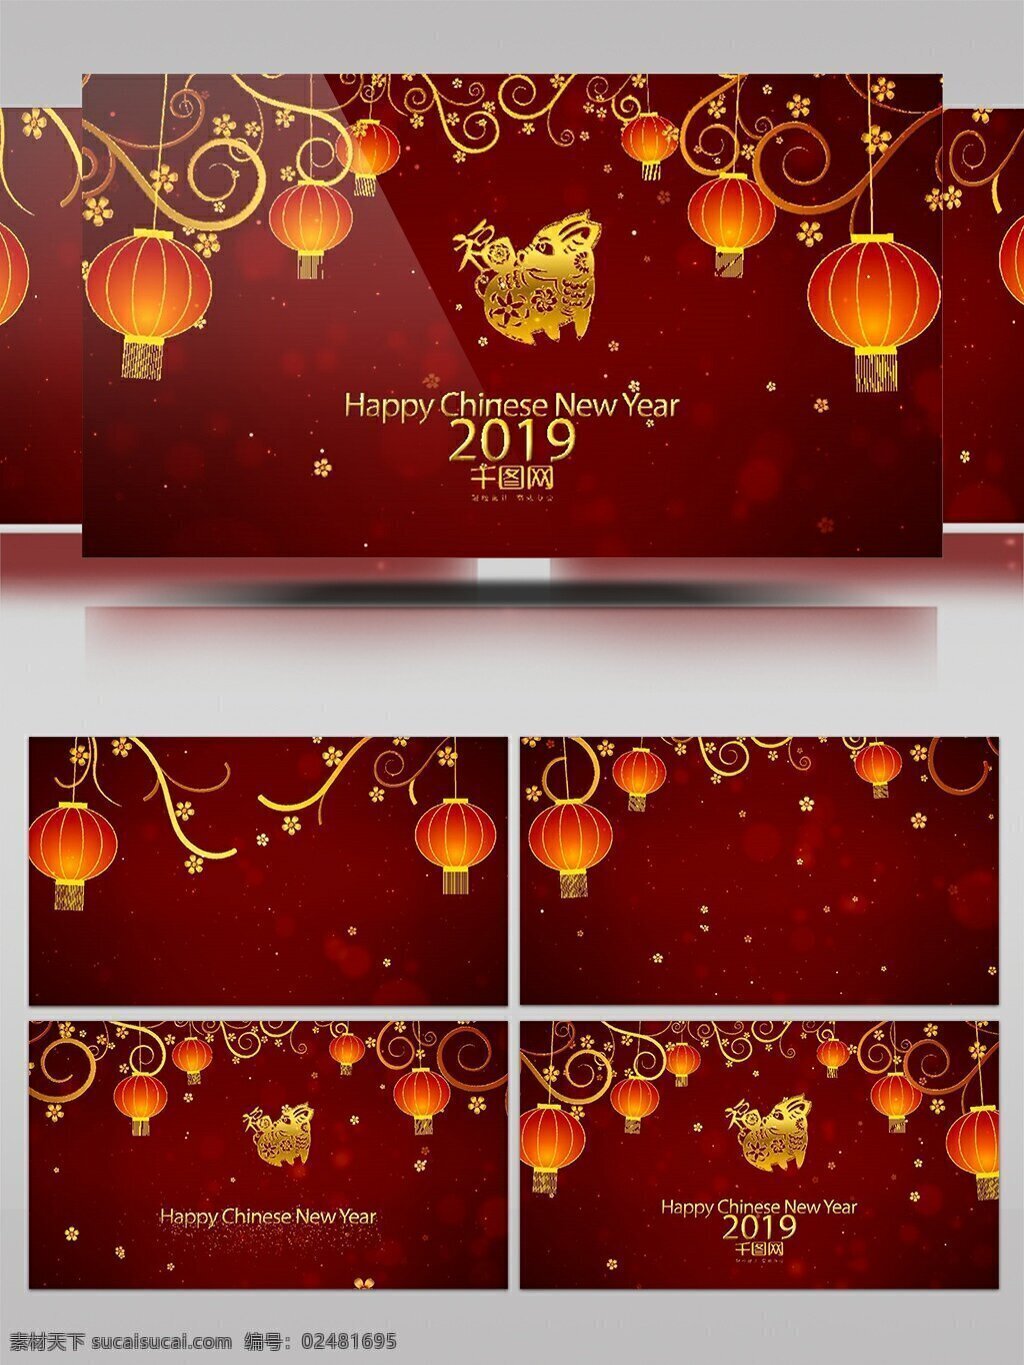 2019 金 猪 贺岁 新年 春节 祝福 视频 sr 模板 喜庆 红色 灯笼 中国风 猪元素 拜年 庆祝 开场